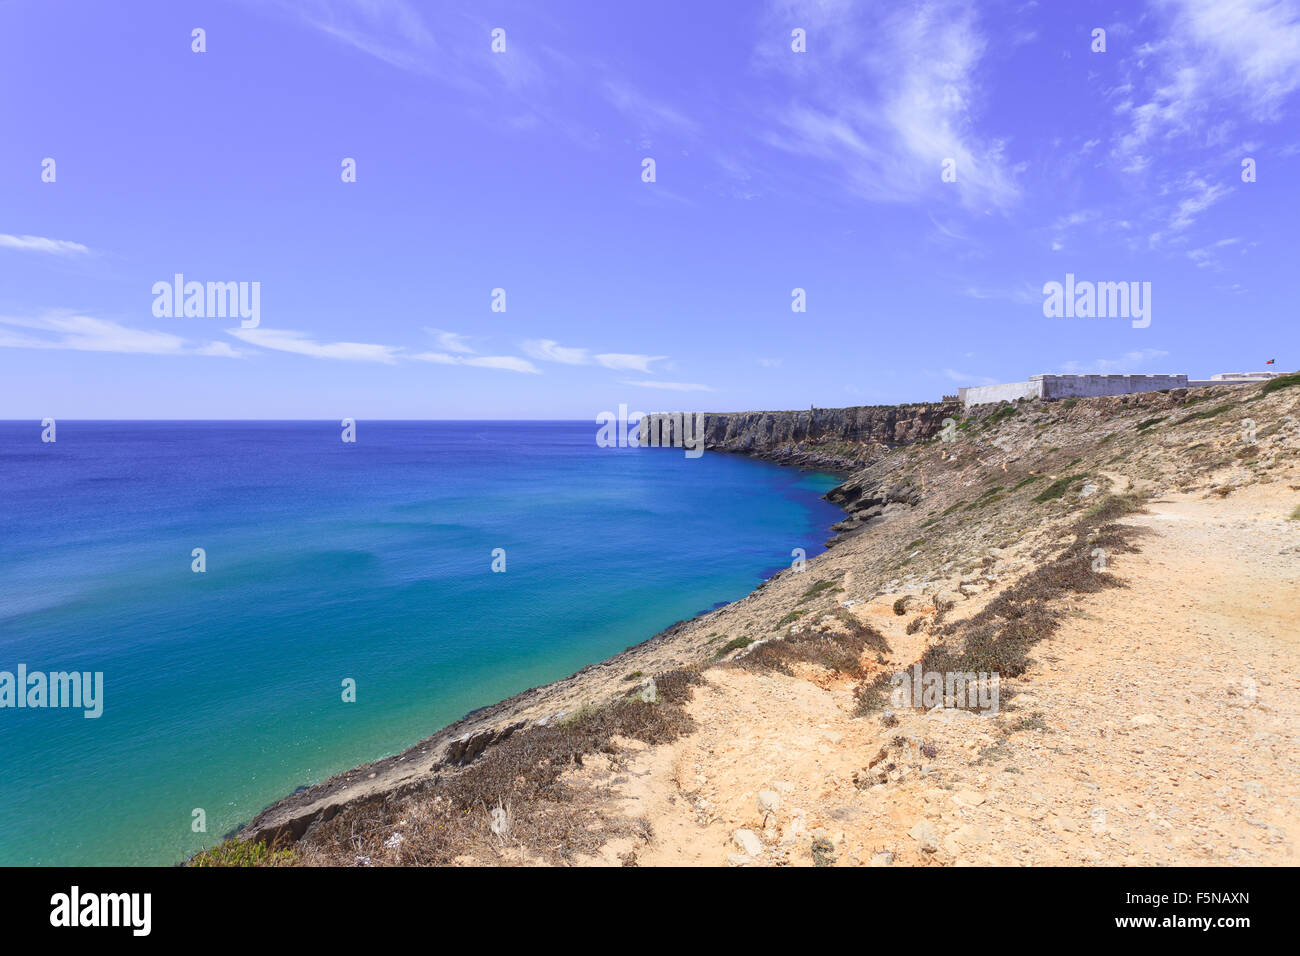 La pointe de Sagres et sa forteresse. Promontoire dans le sud-ouest de l'Algarve, près de Vila do Vispo, le sud du Portugal, Euro Méditerranée Banque D'Images